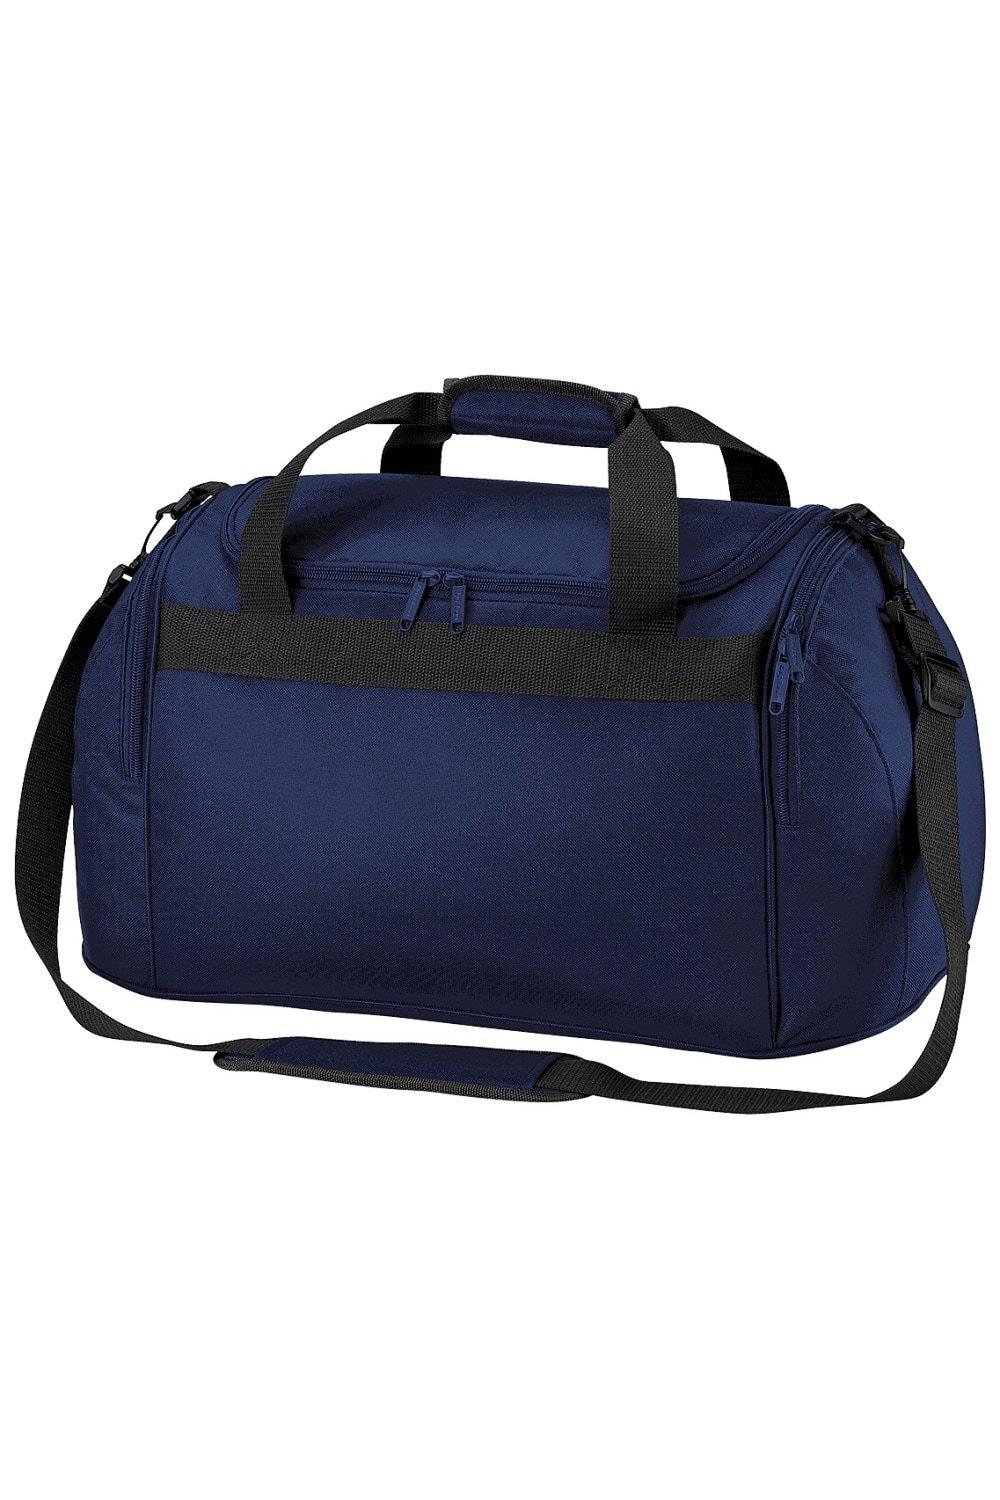 Дорожная сумка для фристайла/спортивная сумка (26 литров) (2 шт. в упаковке) Bagbase, темно-синий